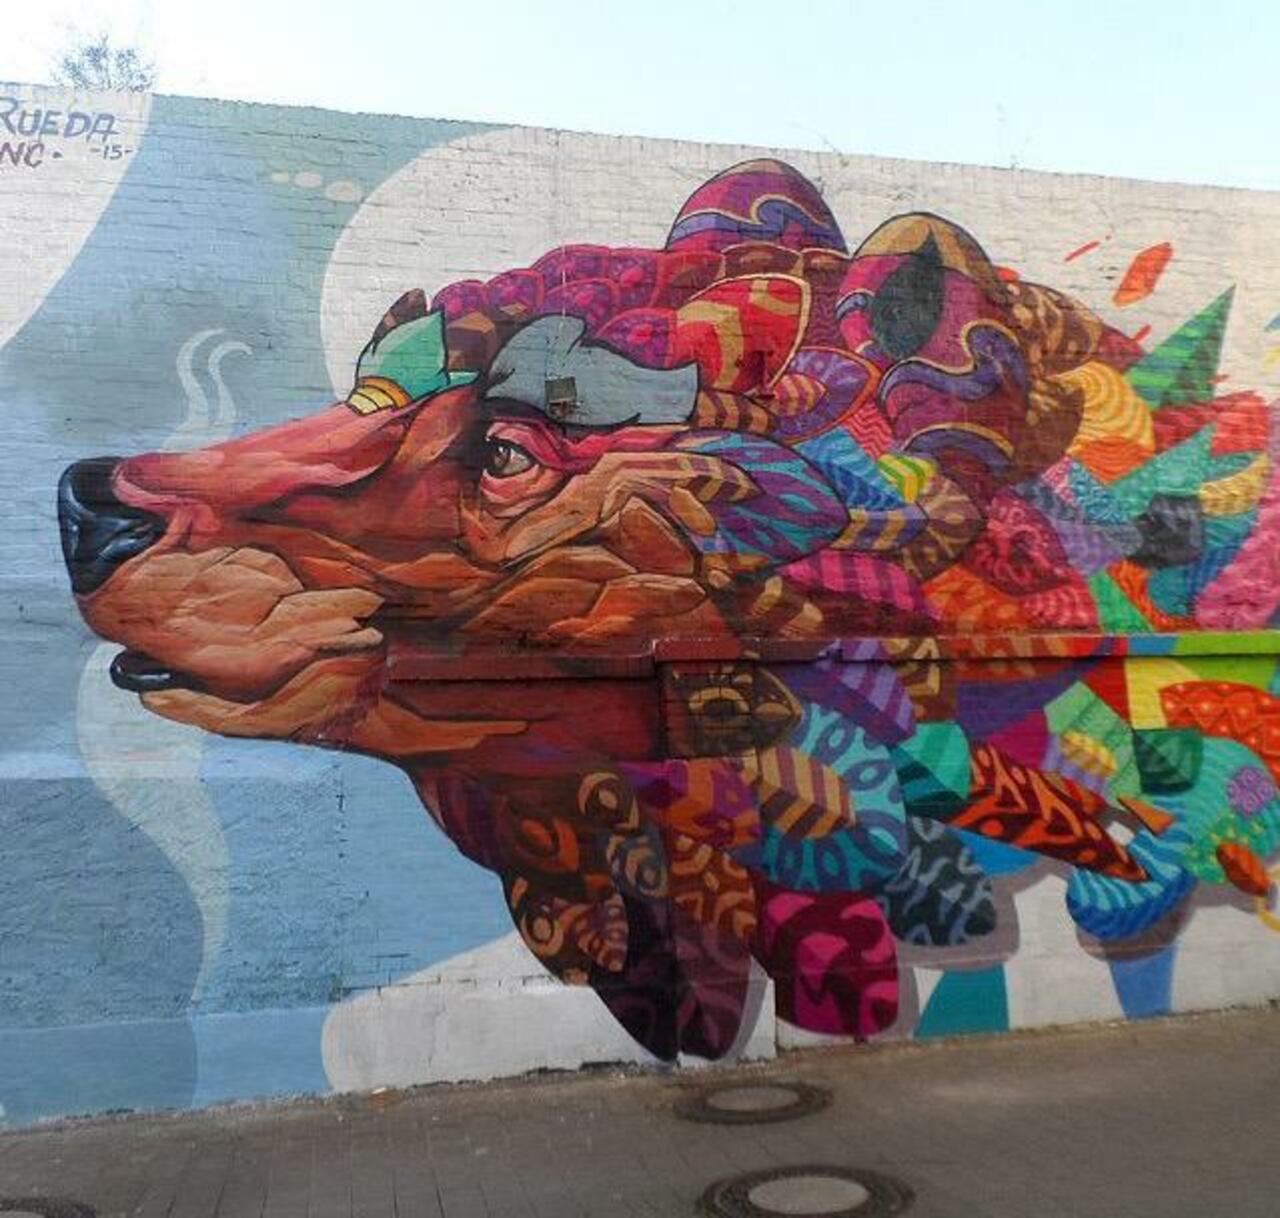 RT @sofharper: Farid Rueda Street Art 

#art #graffiti #mural #streetart http://t.co/74bylTDXmq